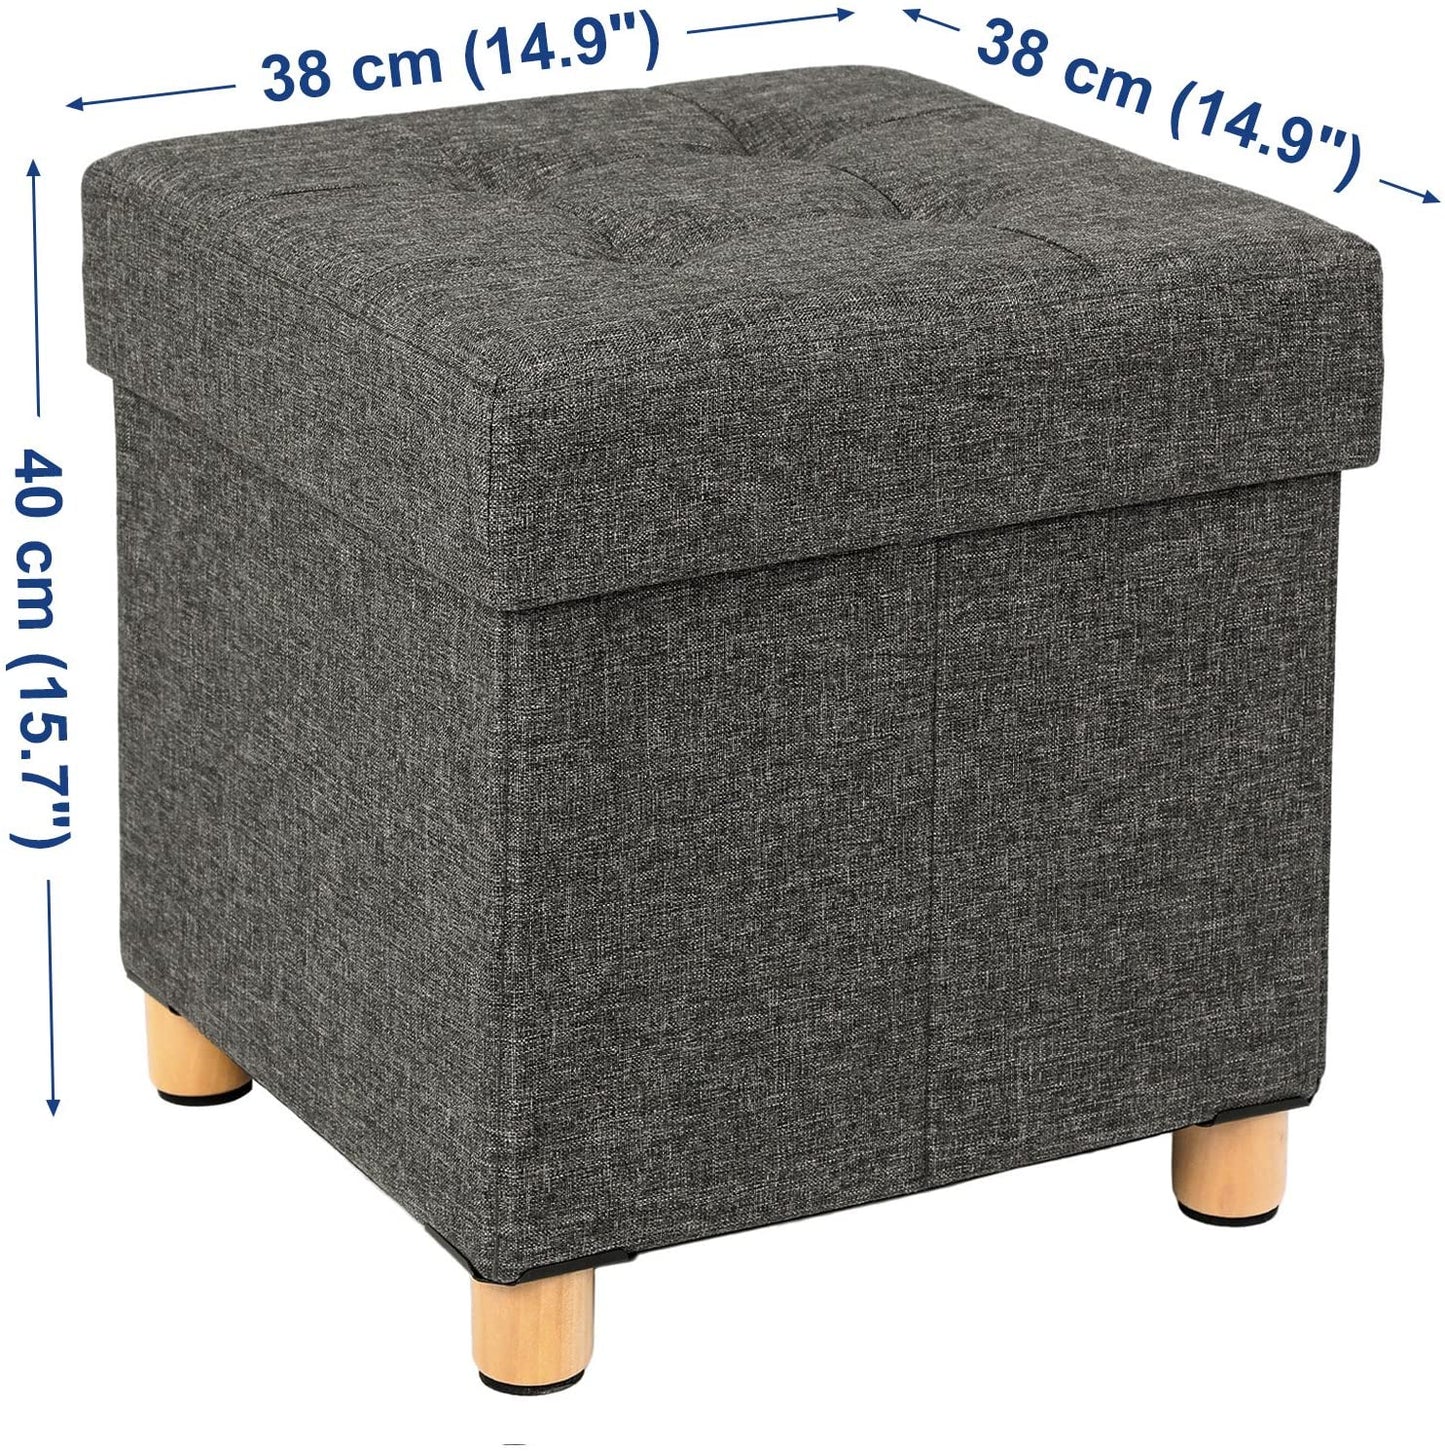 Songmics - Sitzhocker, Faltbare Sitztruhe mit Deckel, Füße aus Massivholz, bis 300 kg belastbar, für Wohnzimmer, Flur, Kinderzimmer, Dunkelgrau